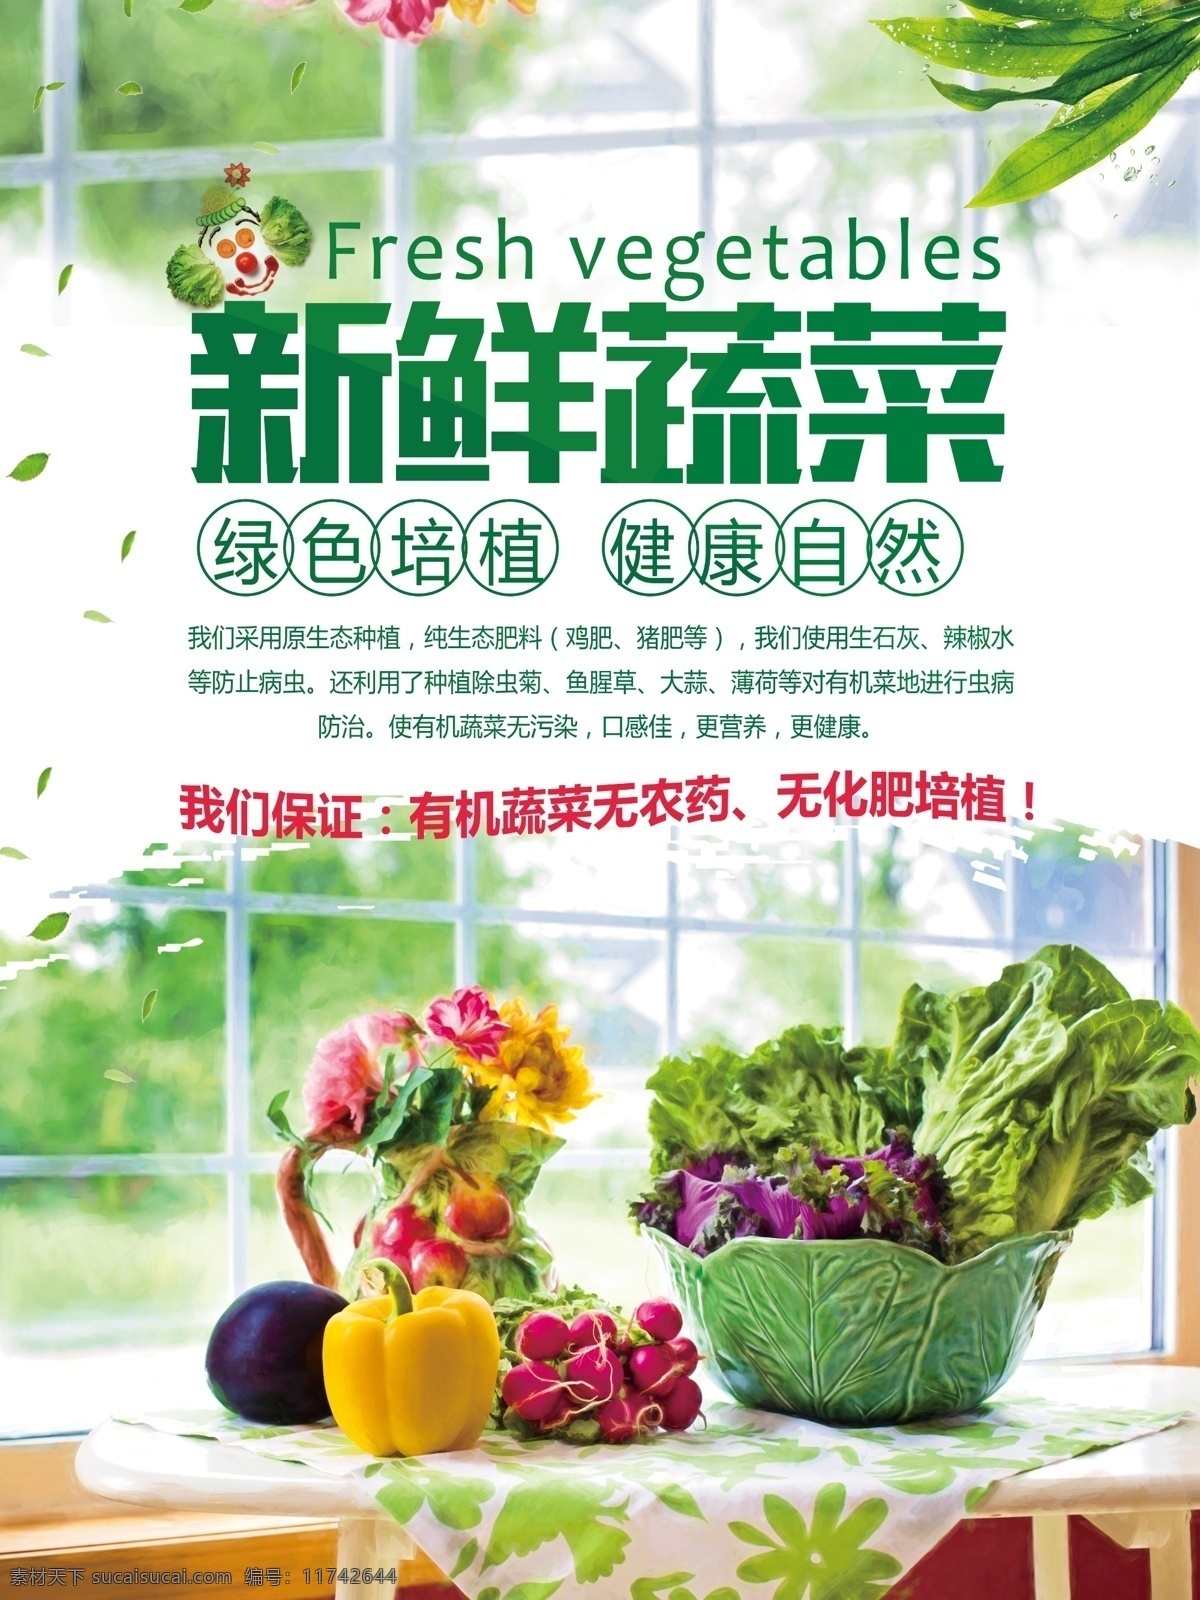 绿色 清新 新鲜 蔬菜 促销 模板 绿色海报 蔬菜海报 食品安全 食品海报 蔬菜水果 新鲜蔬菜 绿色蔬菜 有机蔬菜 有机培育 蔬菜海报模板 蔬菜促销 绿色健康 绿色自然蔬菜